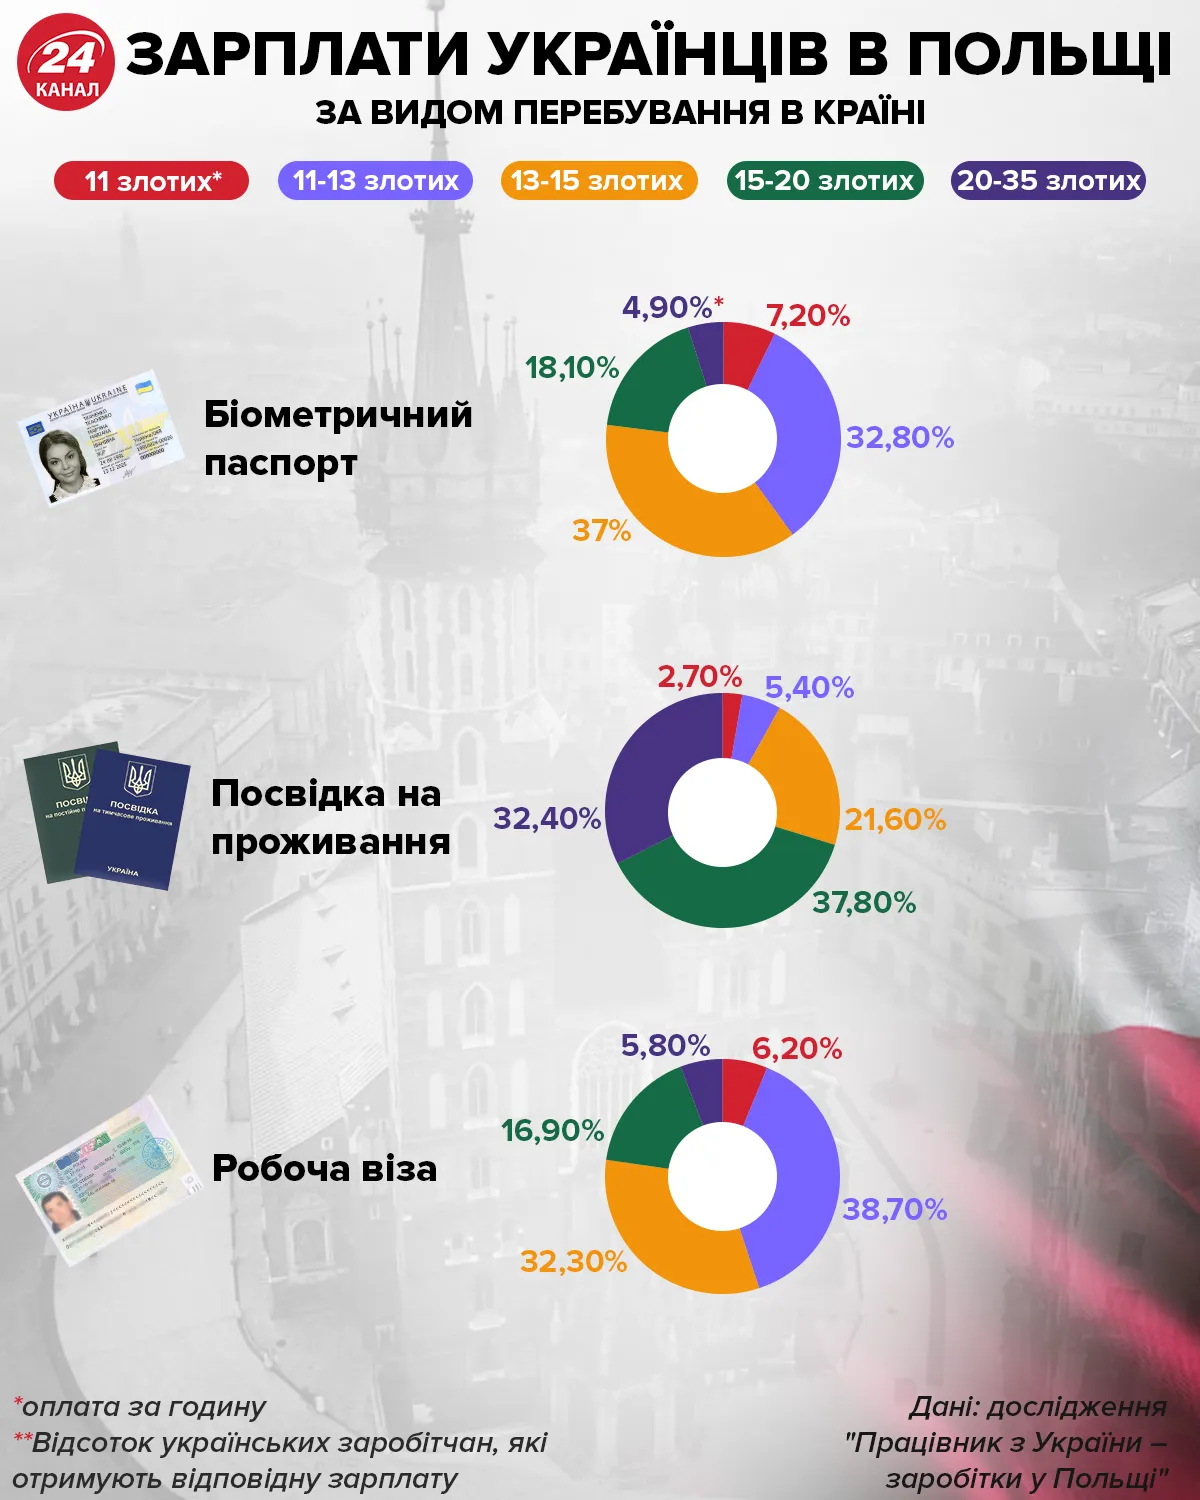 Зарплаты украинцев по виду пребывание в стране  Инфографика 24 канала